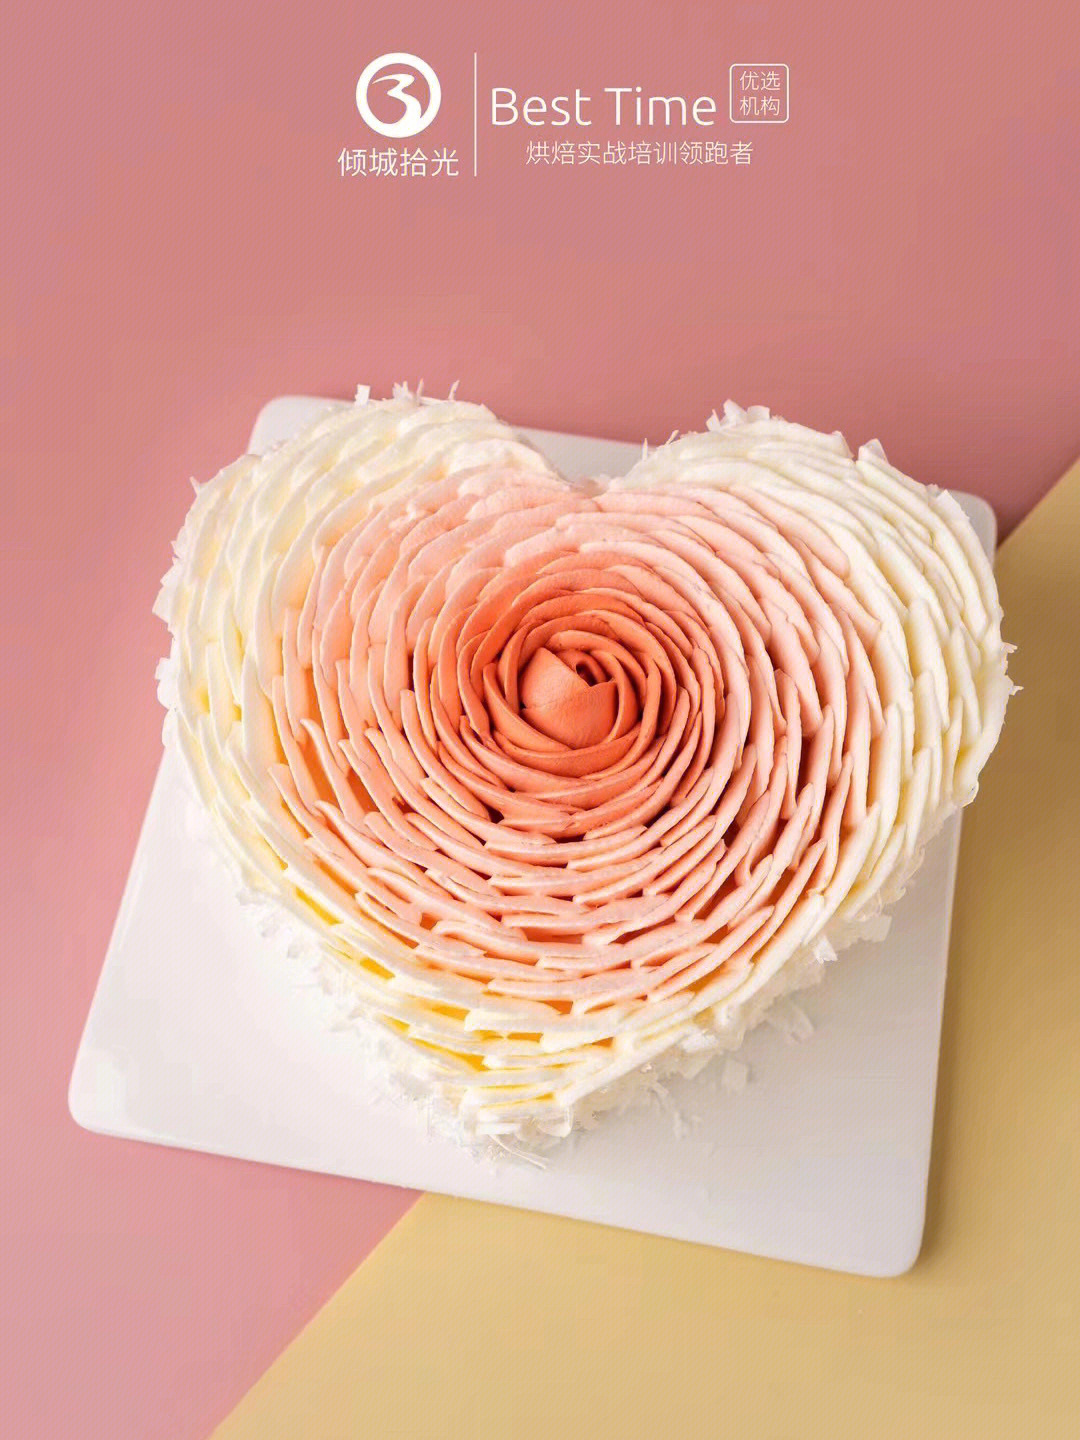 爱心裱花蛋糕